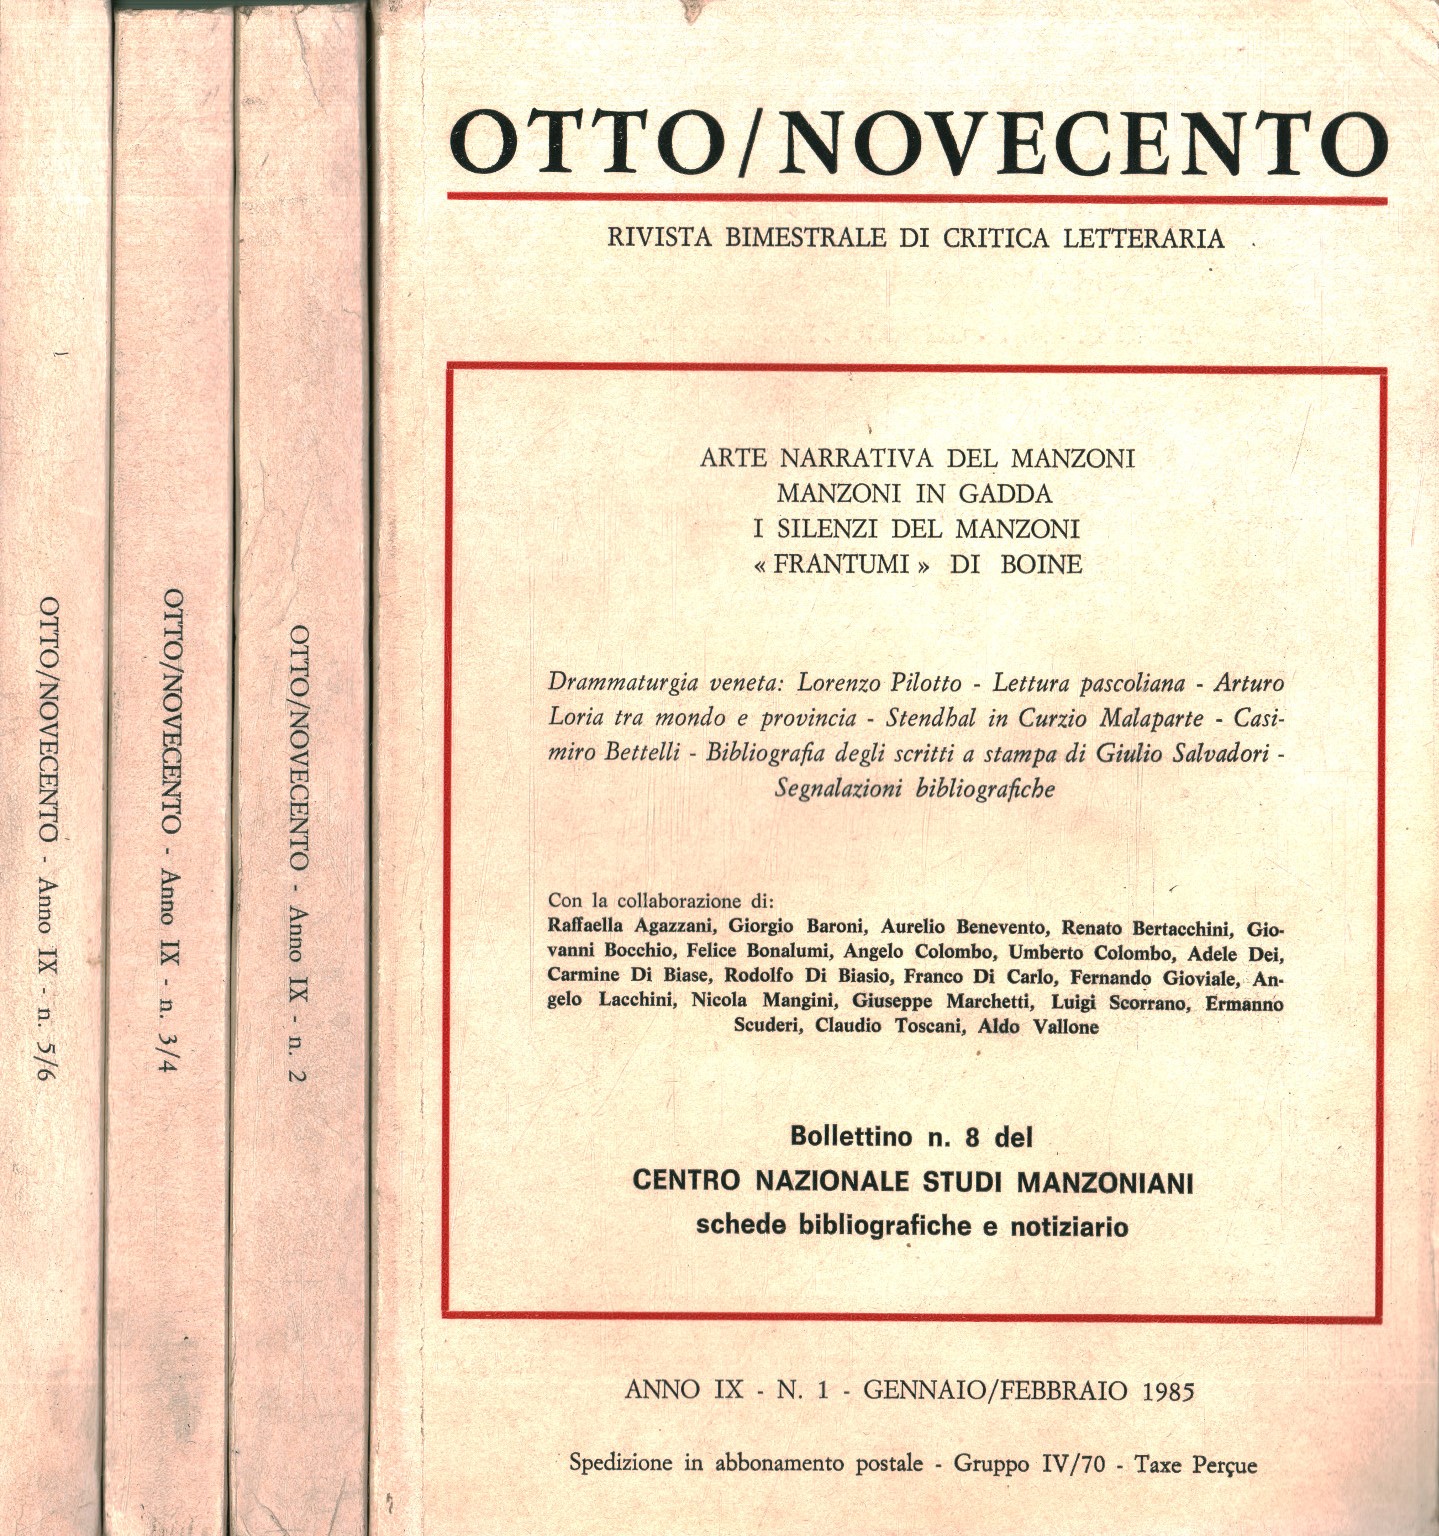 Otto/Novecento: zweimonatliche Überprüfung der krit